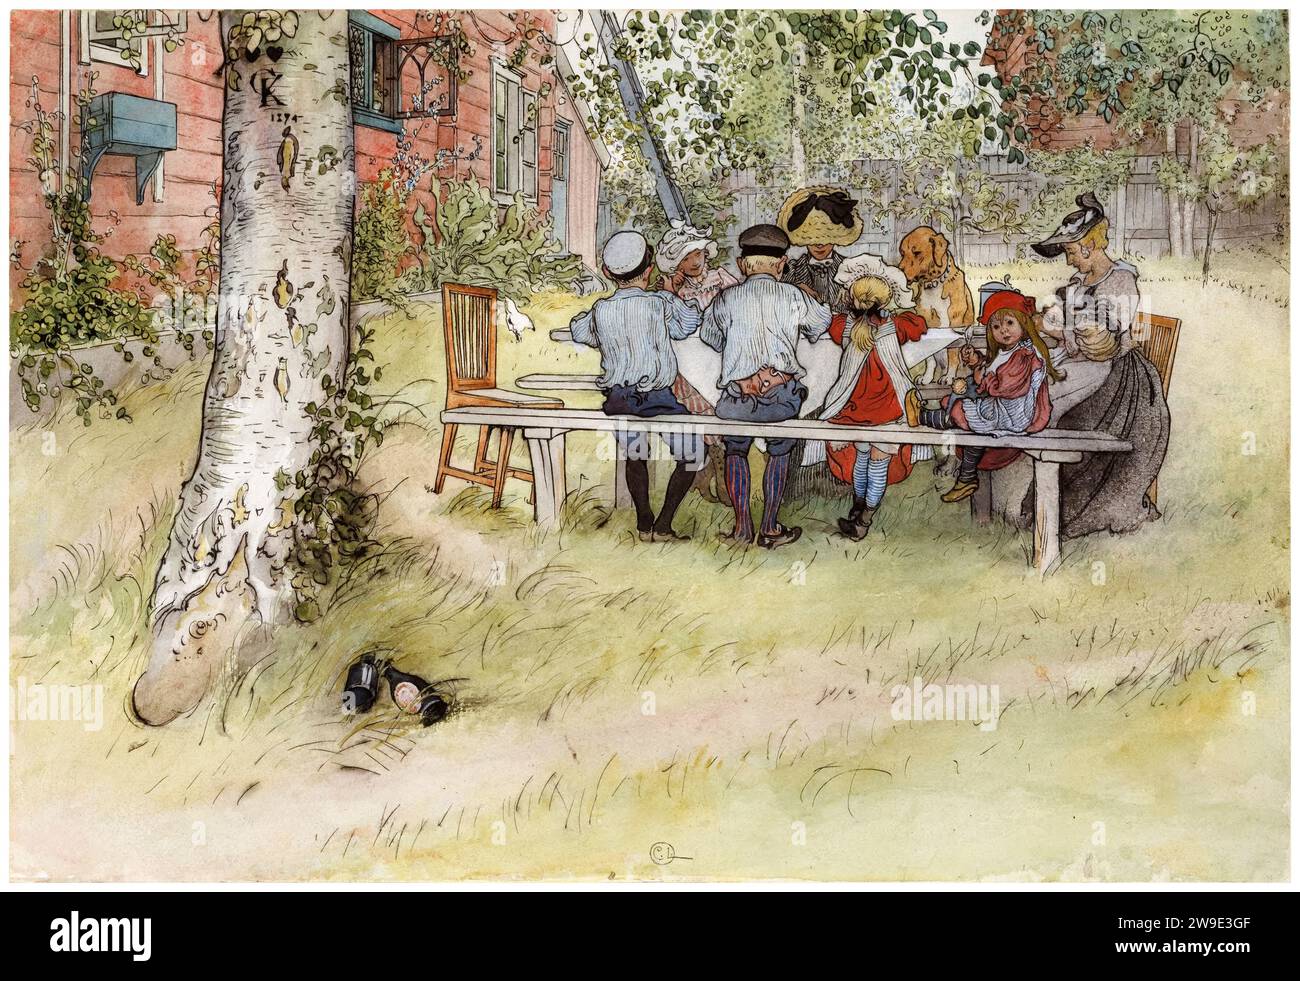 Carl Larsson, Breakfast Under the Big Birch, dalla serie: 'A Home' (26 acquerelli), acquerello dipinto, 1894-1895 Foto Stock